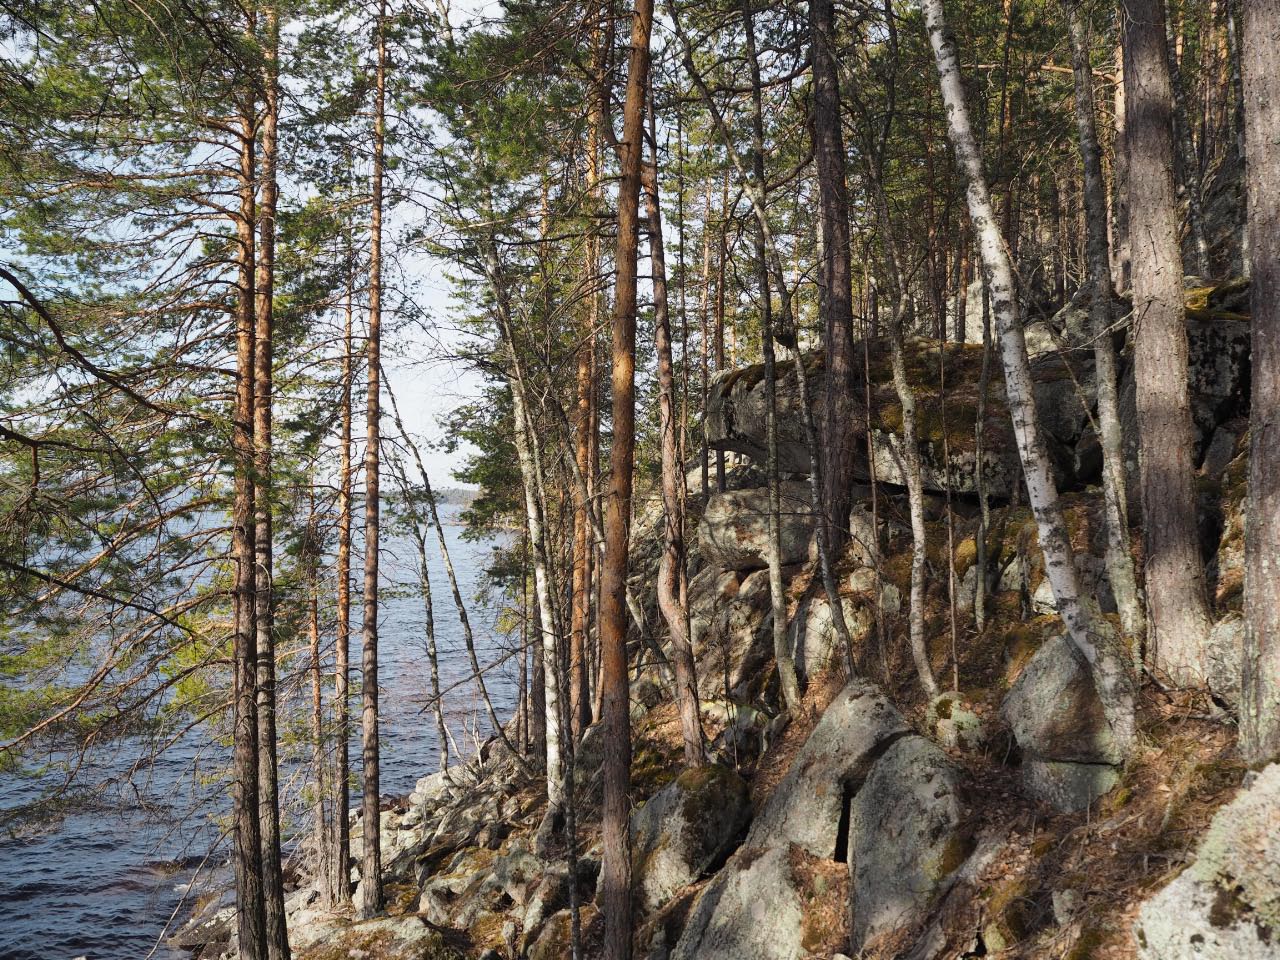 Kuva: Enonkoski Kurtinvuori. Kalliomaalauksia siirtolohkareen luolalamaisessa osassa. Kuvattuna kohti länttä. Teemu Mökkönen 11.5.2021